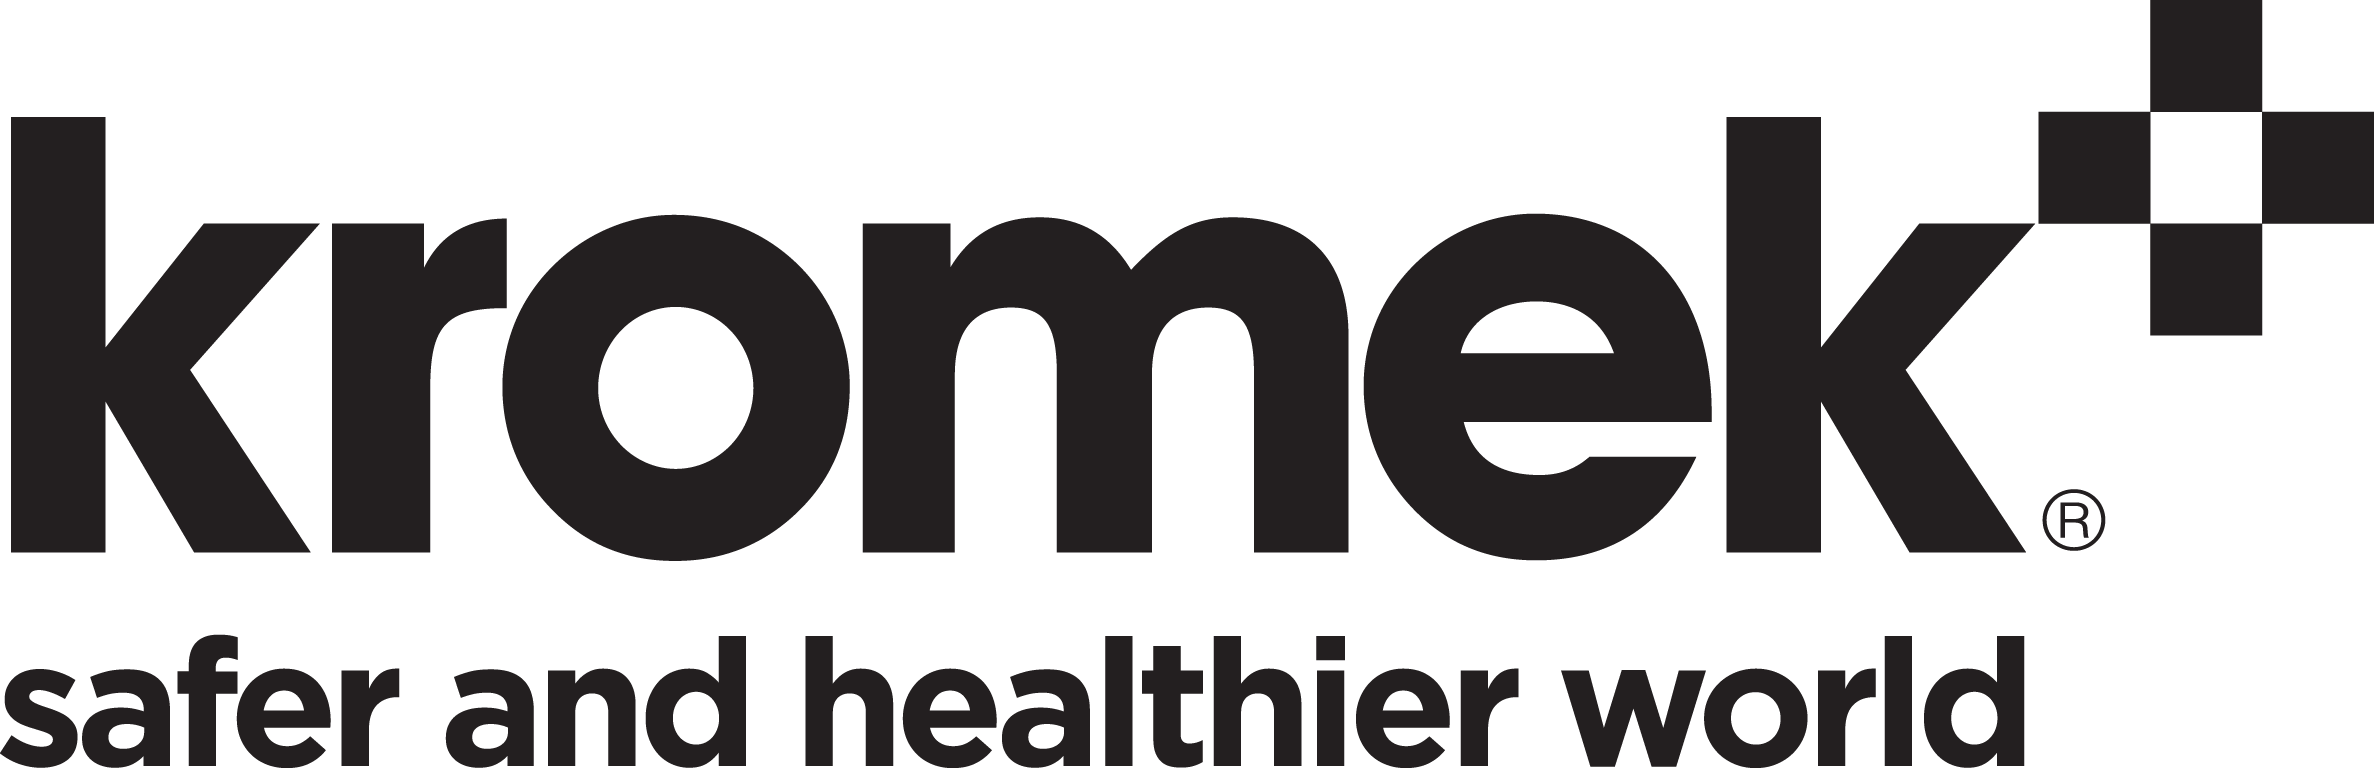 Kromek - Safer and healthier world